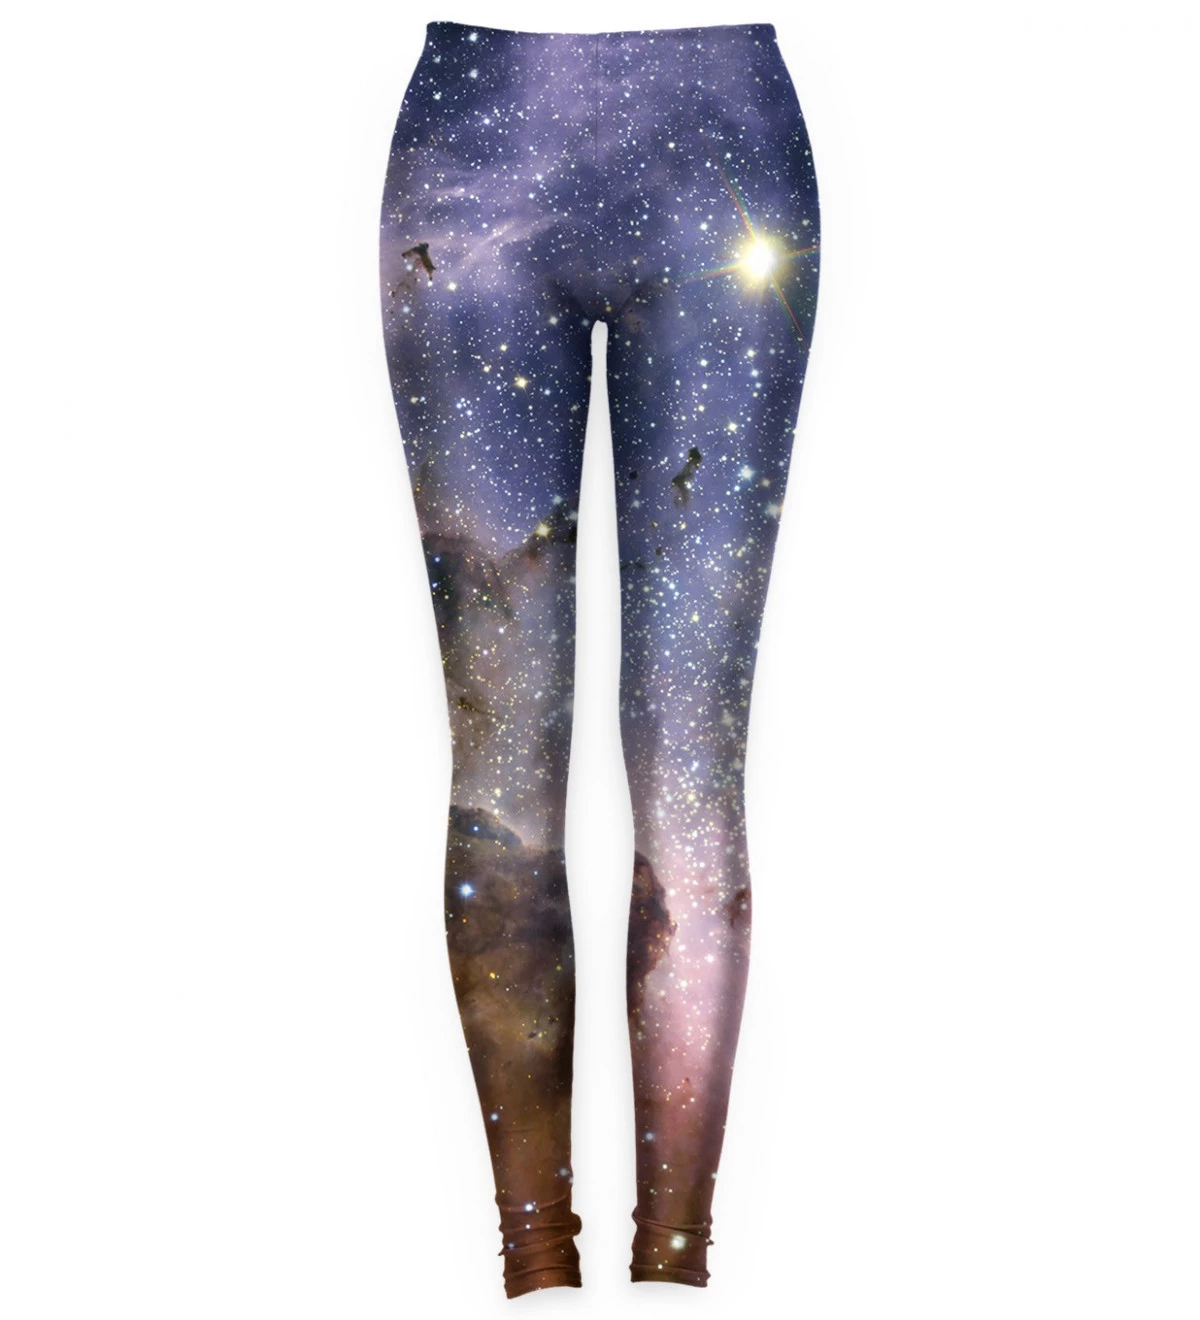 Violet Nebula leggings for kids